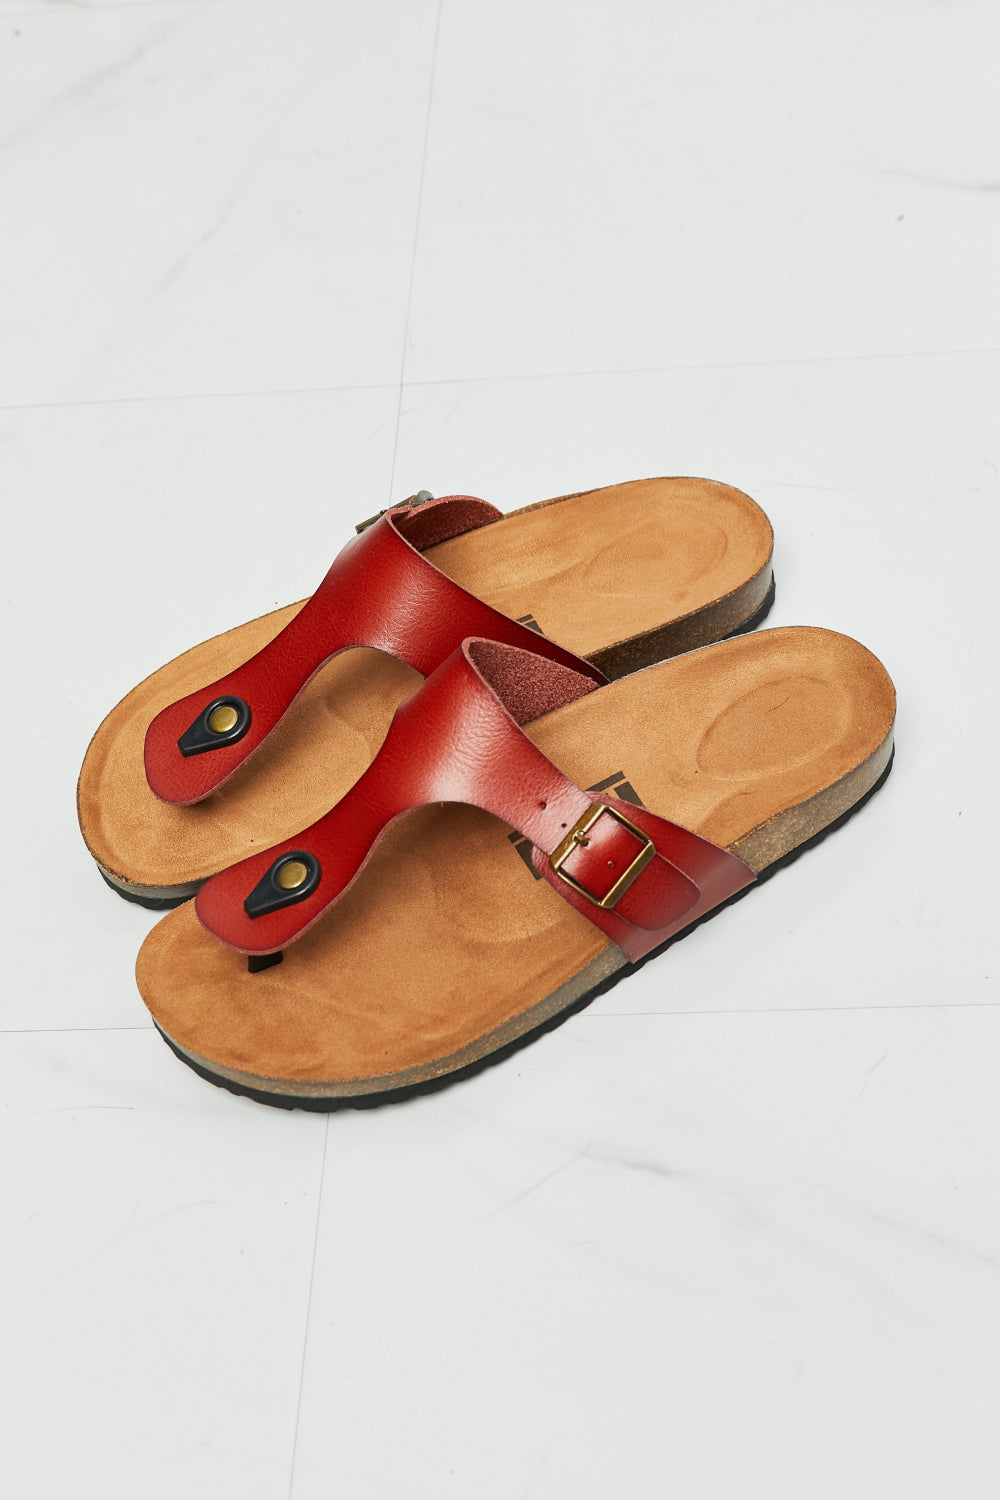 Drift Away T-Strap Sandal in Red